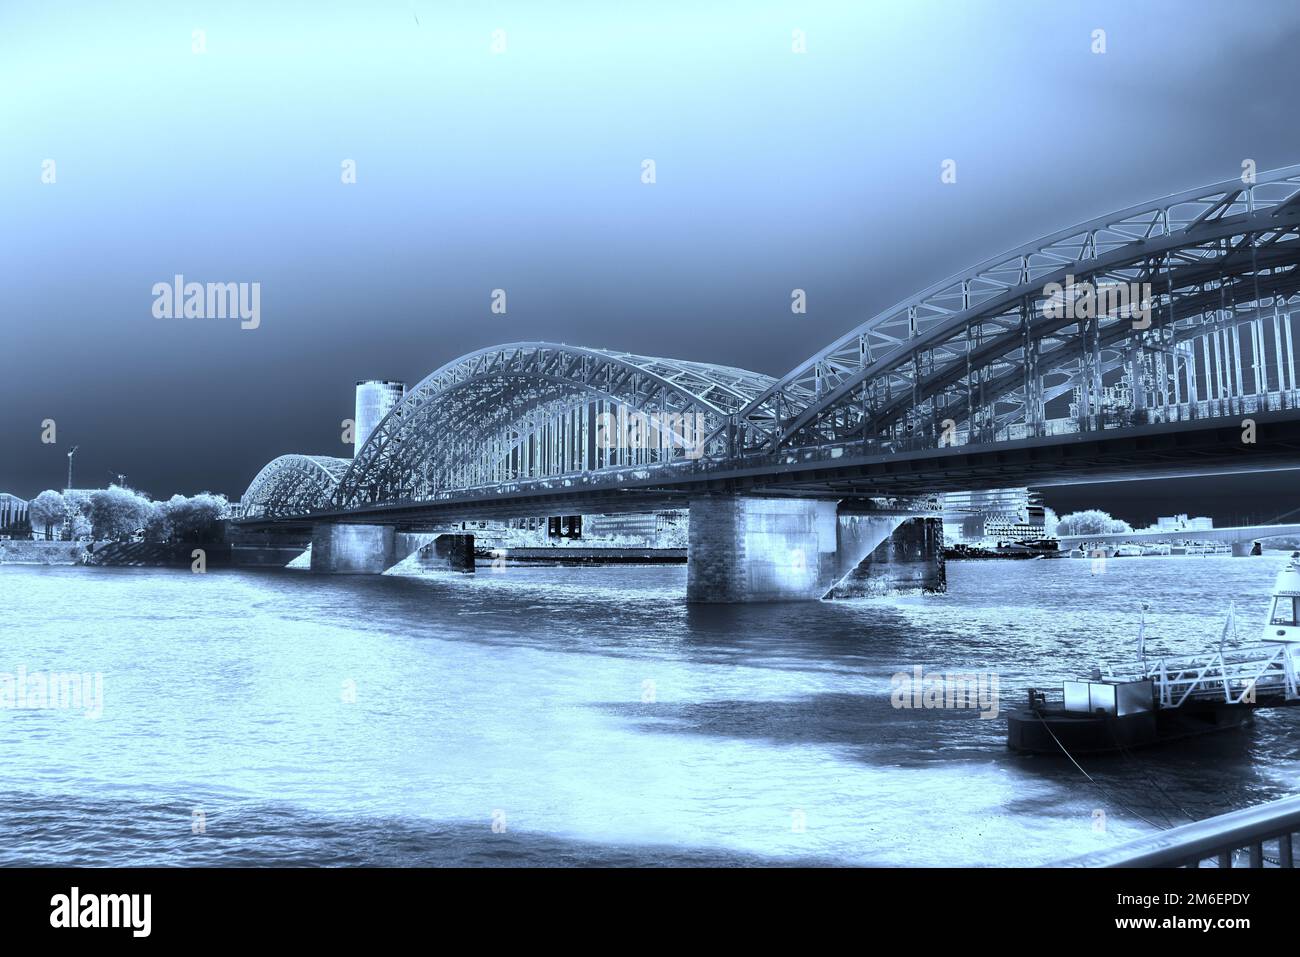 Arch bridge in Cologne over the Rhine Stock Photo